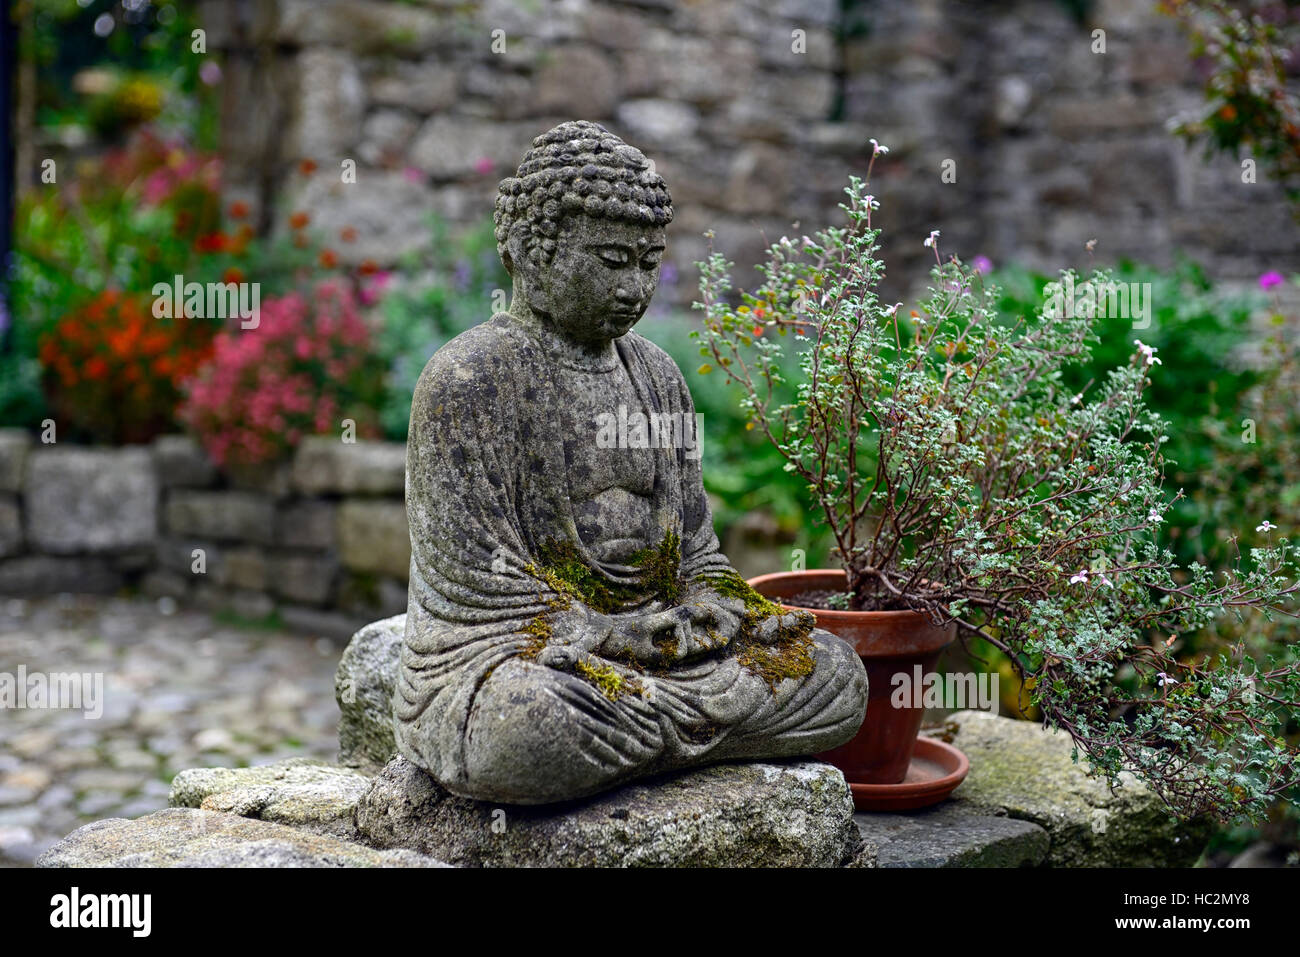 Estatua de buda jardín patio contemplar meditar silencio calma jardinería jardín floral de RM Foto de stock